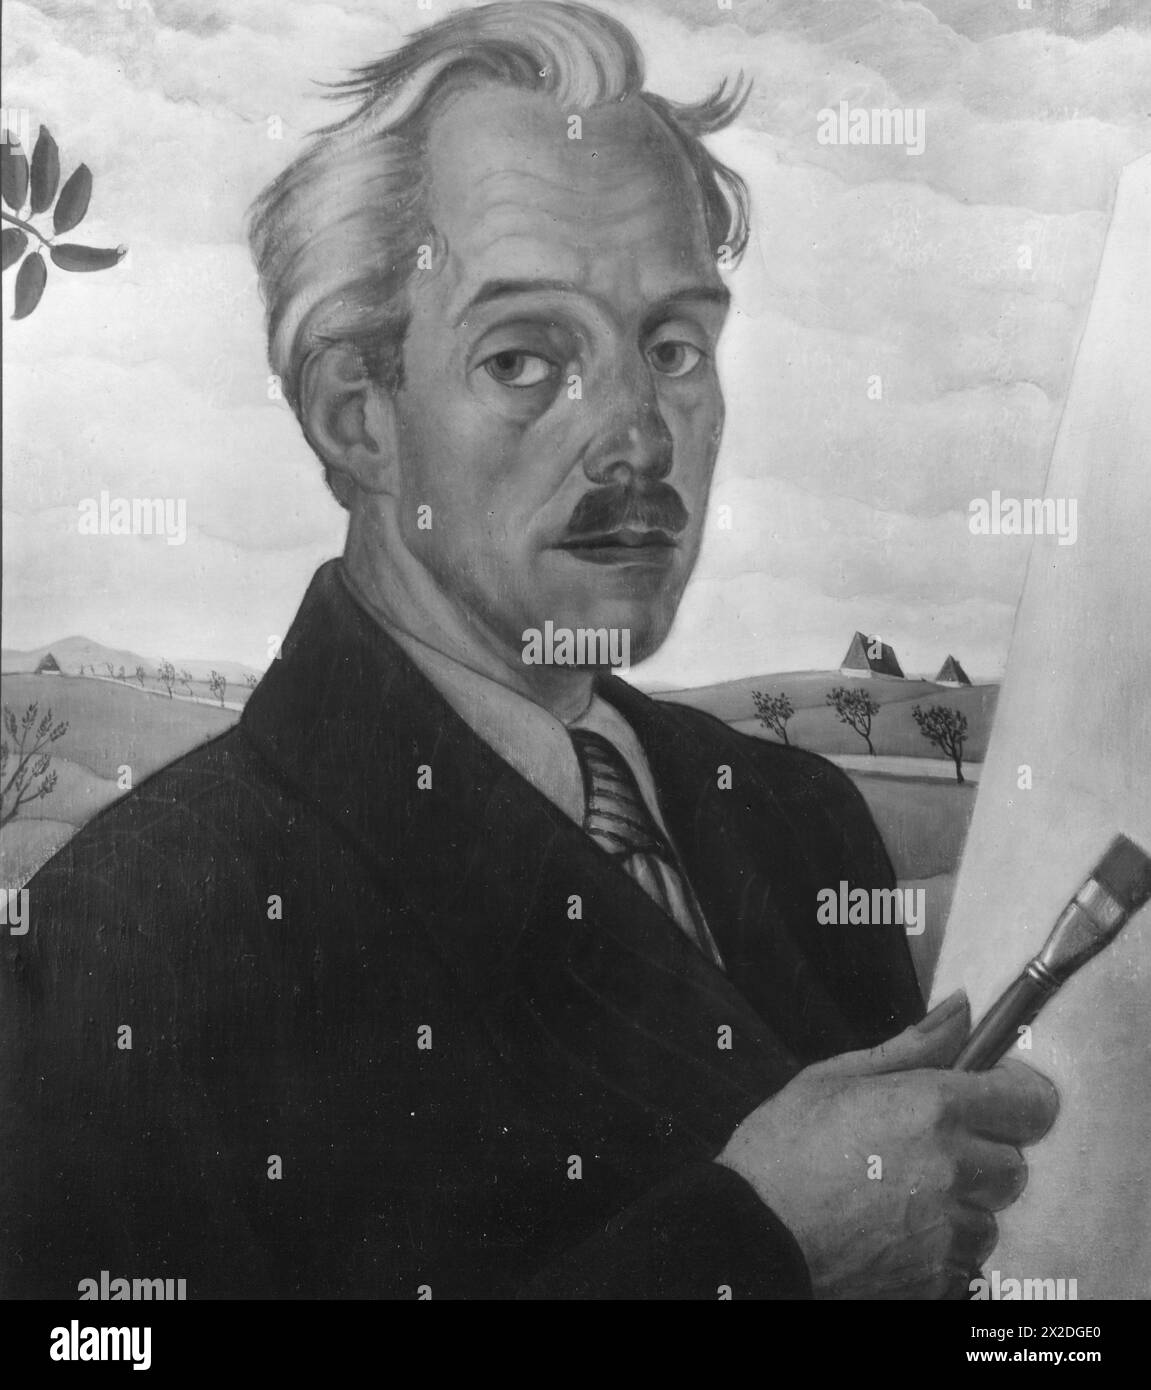 Schoenberg, Ewald, 7.8.1882 - 22.1,1949, peintre allemand, autoportrait, 1935, LES DROITS D'AUTEUR DE L'ARTISTE NE DOIVENT PAS ÊTRE EFFACÉS | EDITORIAL-USE-ONLY Banque D'Images